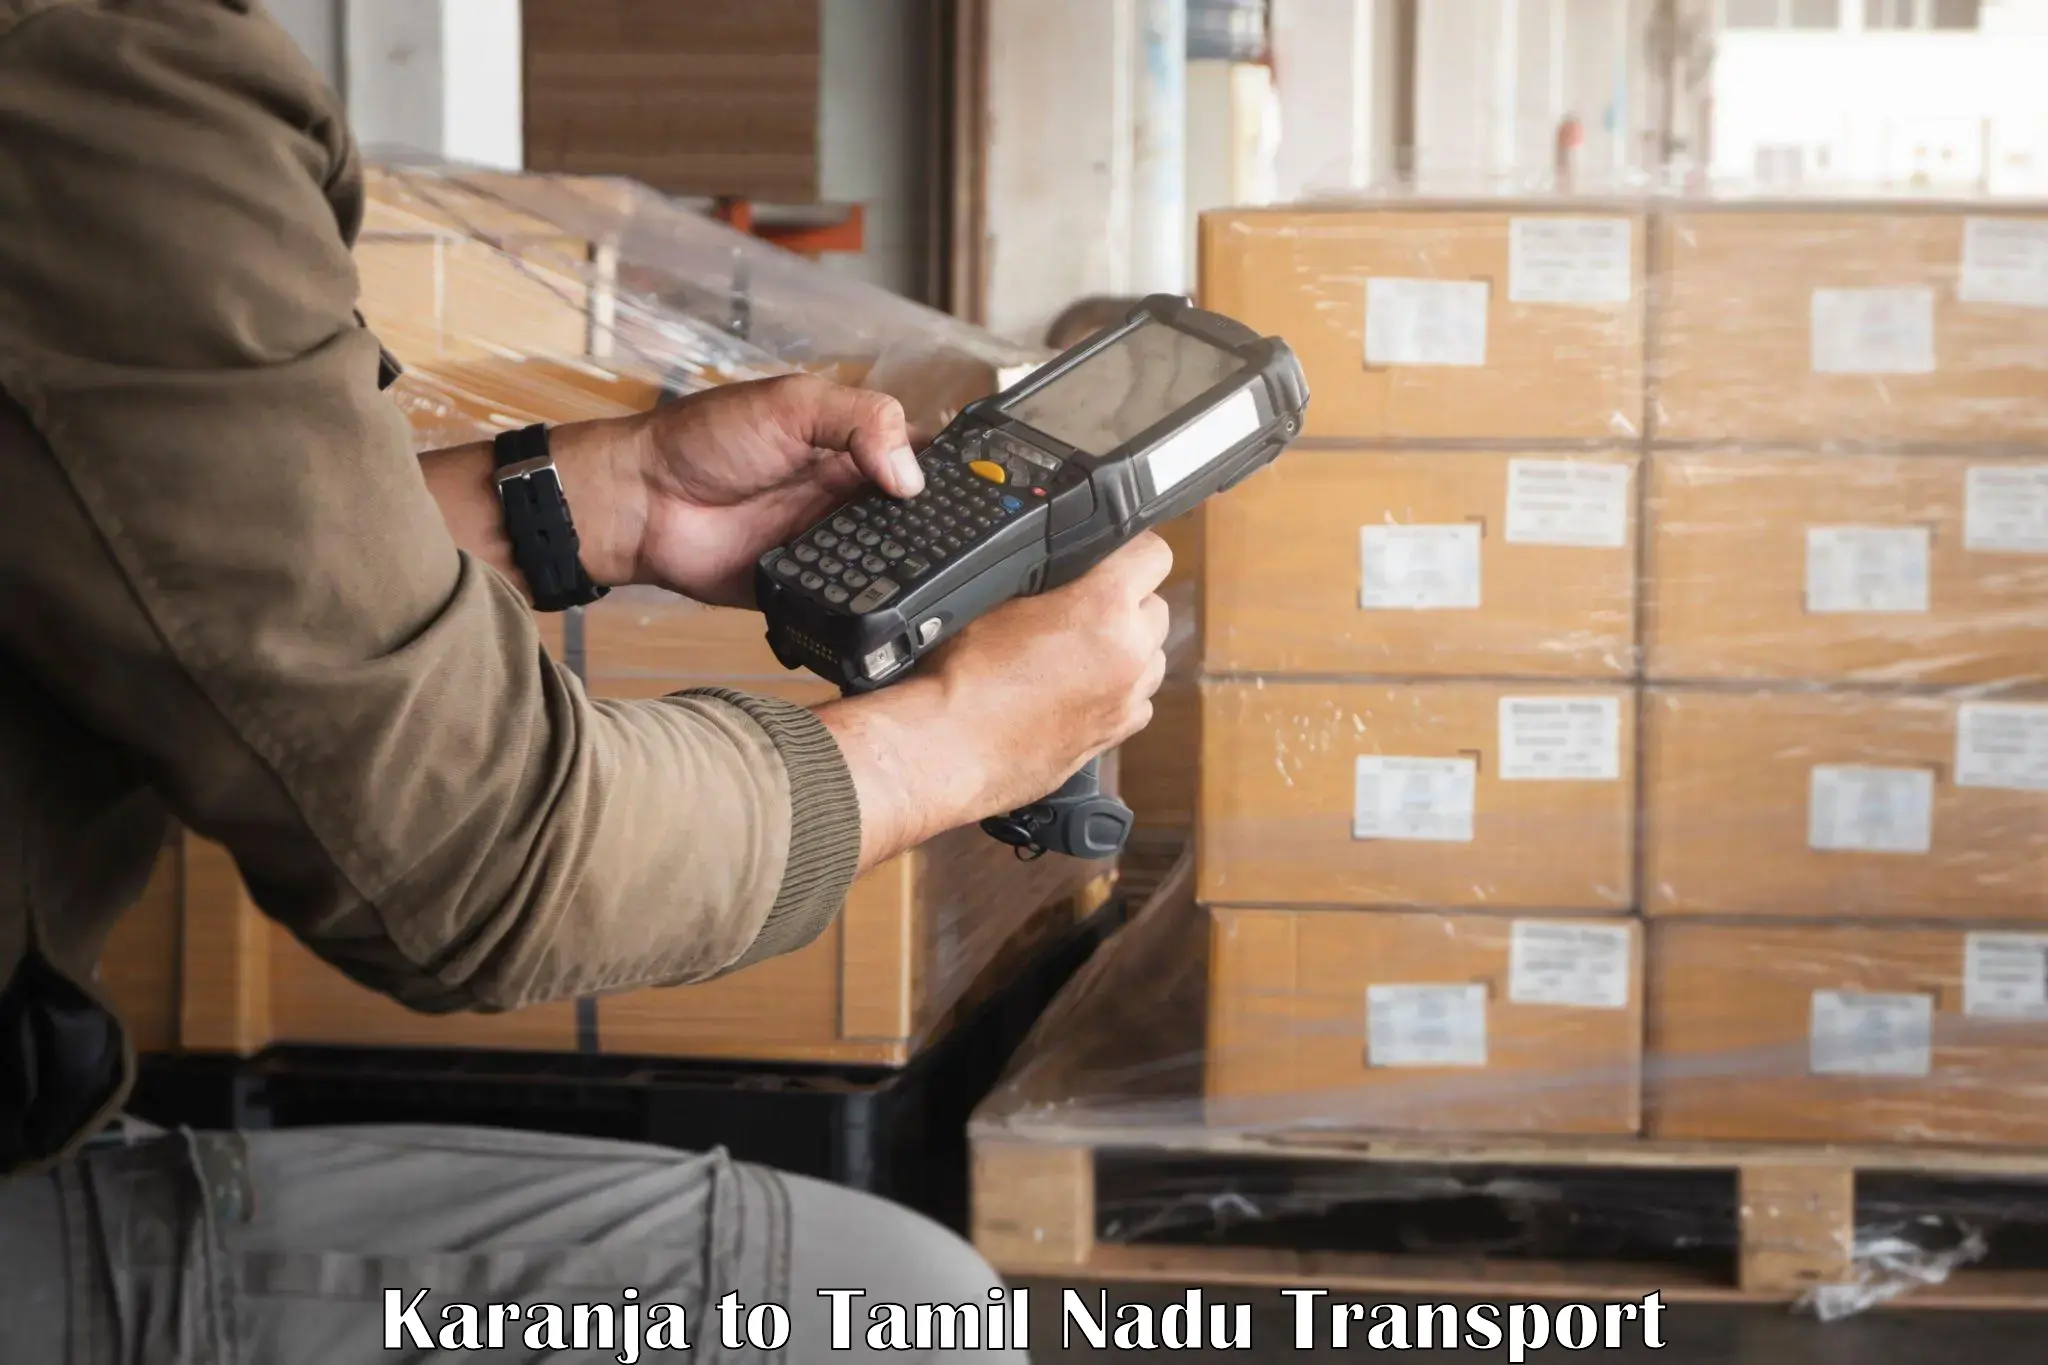 Land transport services Karanja to Kanchipuram